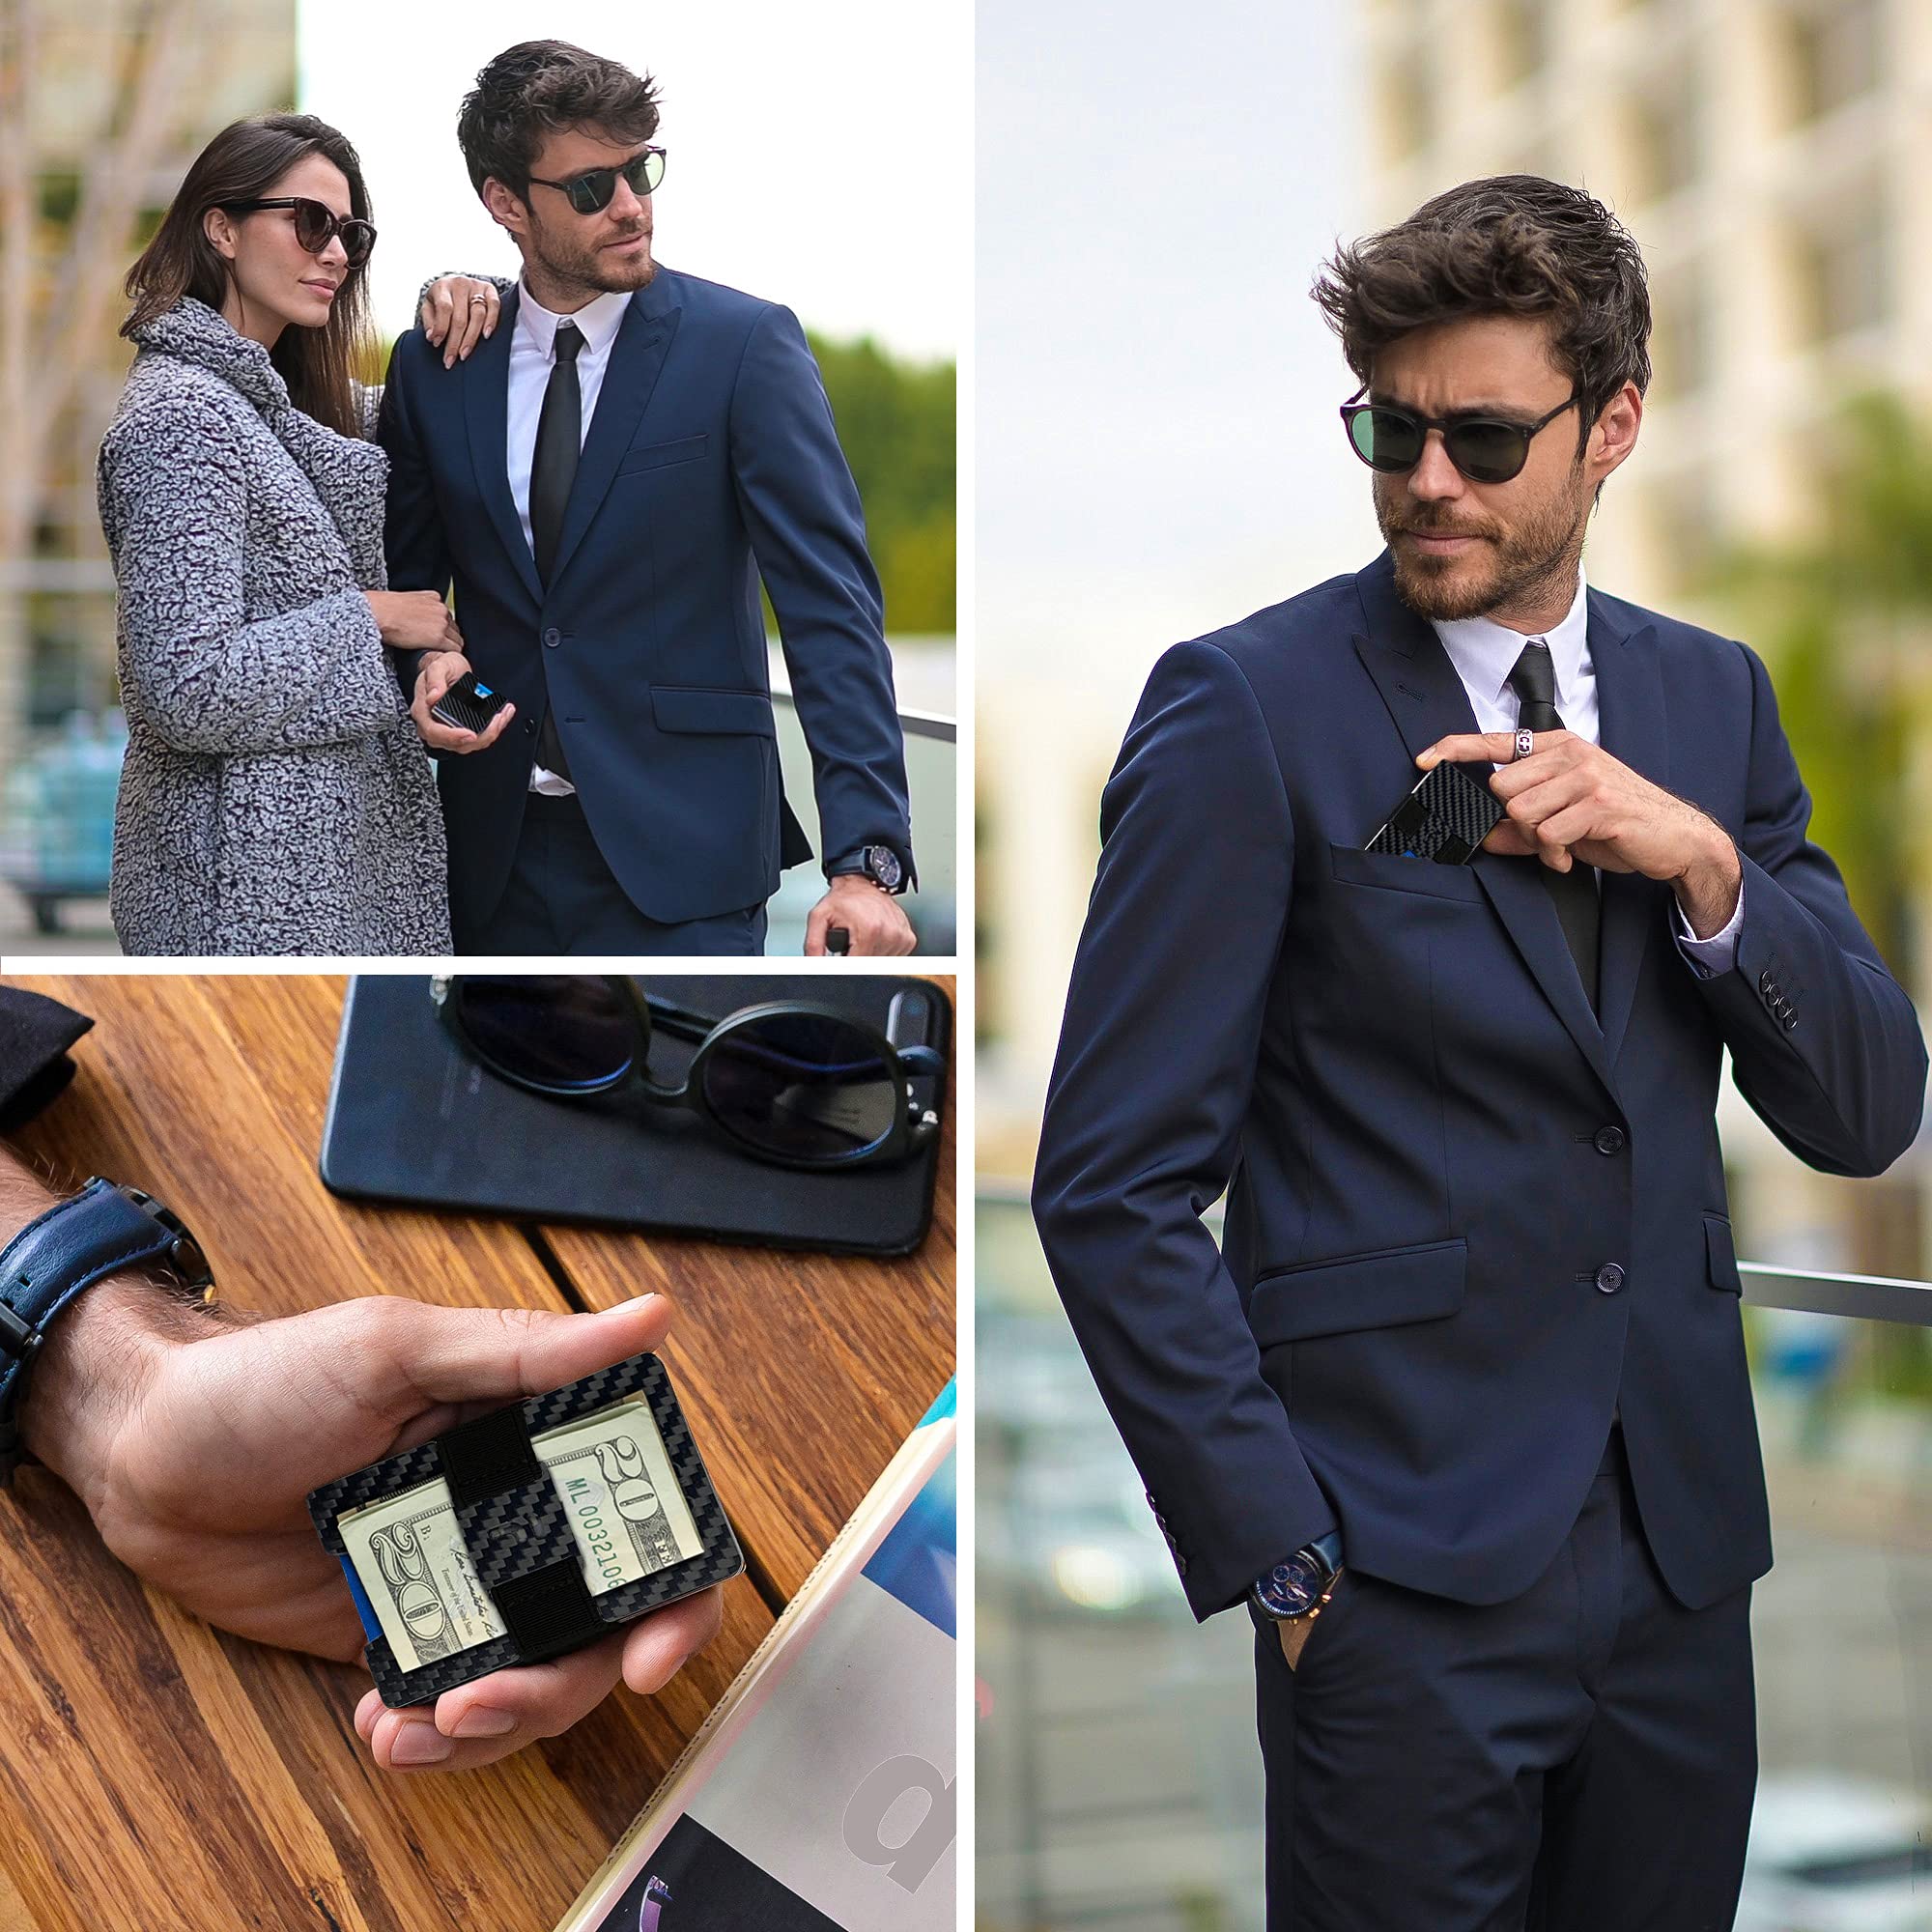 Fidelo Minimalist Wallet For Men - Slim RFID Blocking Mens Wallets Credit Card Holder. 3K Carbon Fiber. Compact Wallet Comes With 4 Cash Bands (Black, Dark Grey, Light Grey & Blue) - Prestige